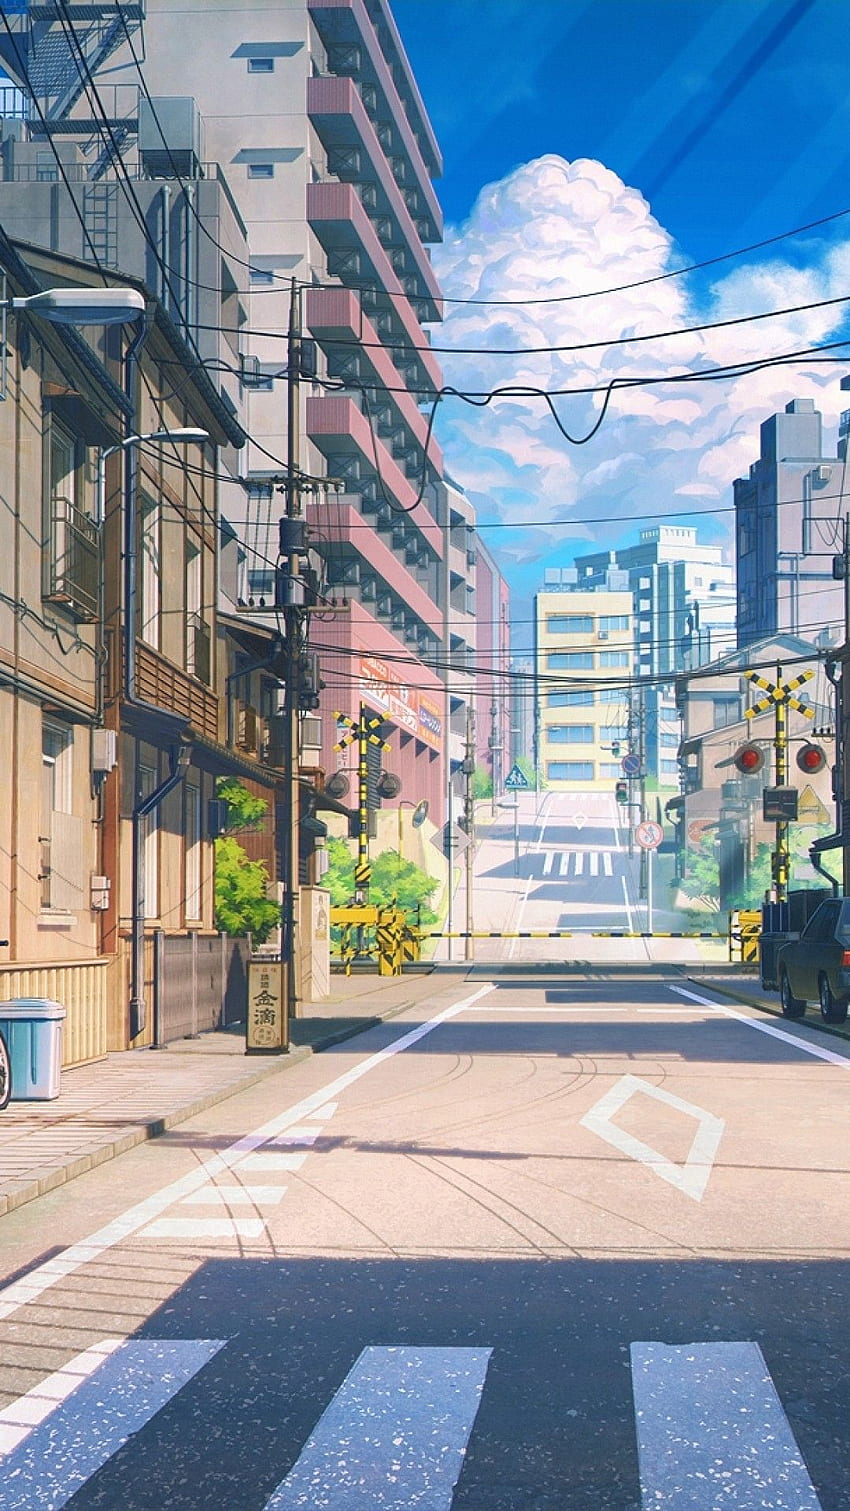 Anime-style summer skyscrapers - Stock Illustration [73605462] - PIXTA